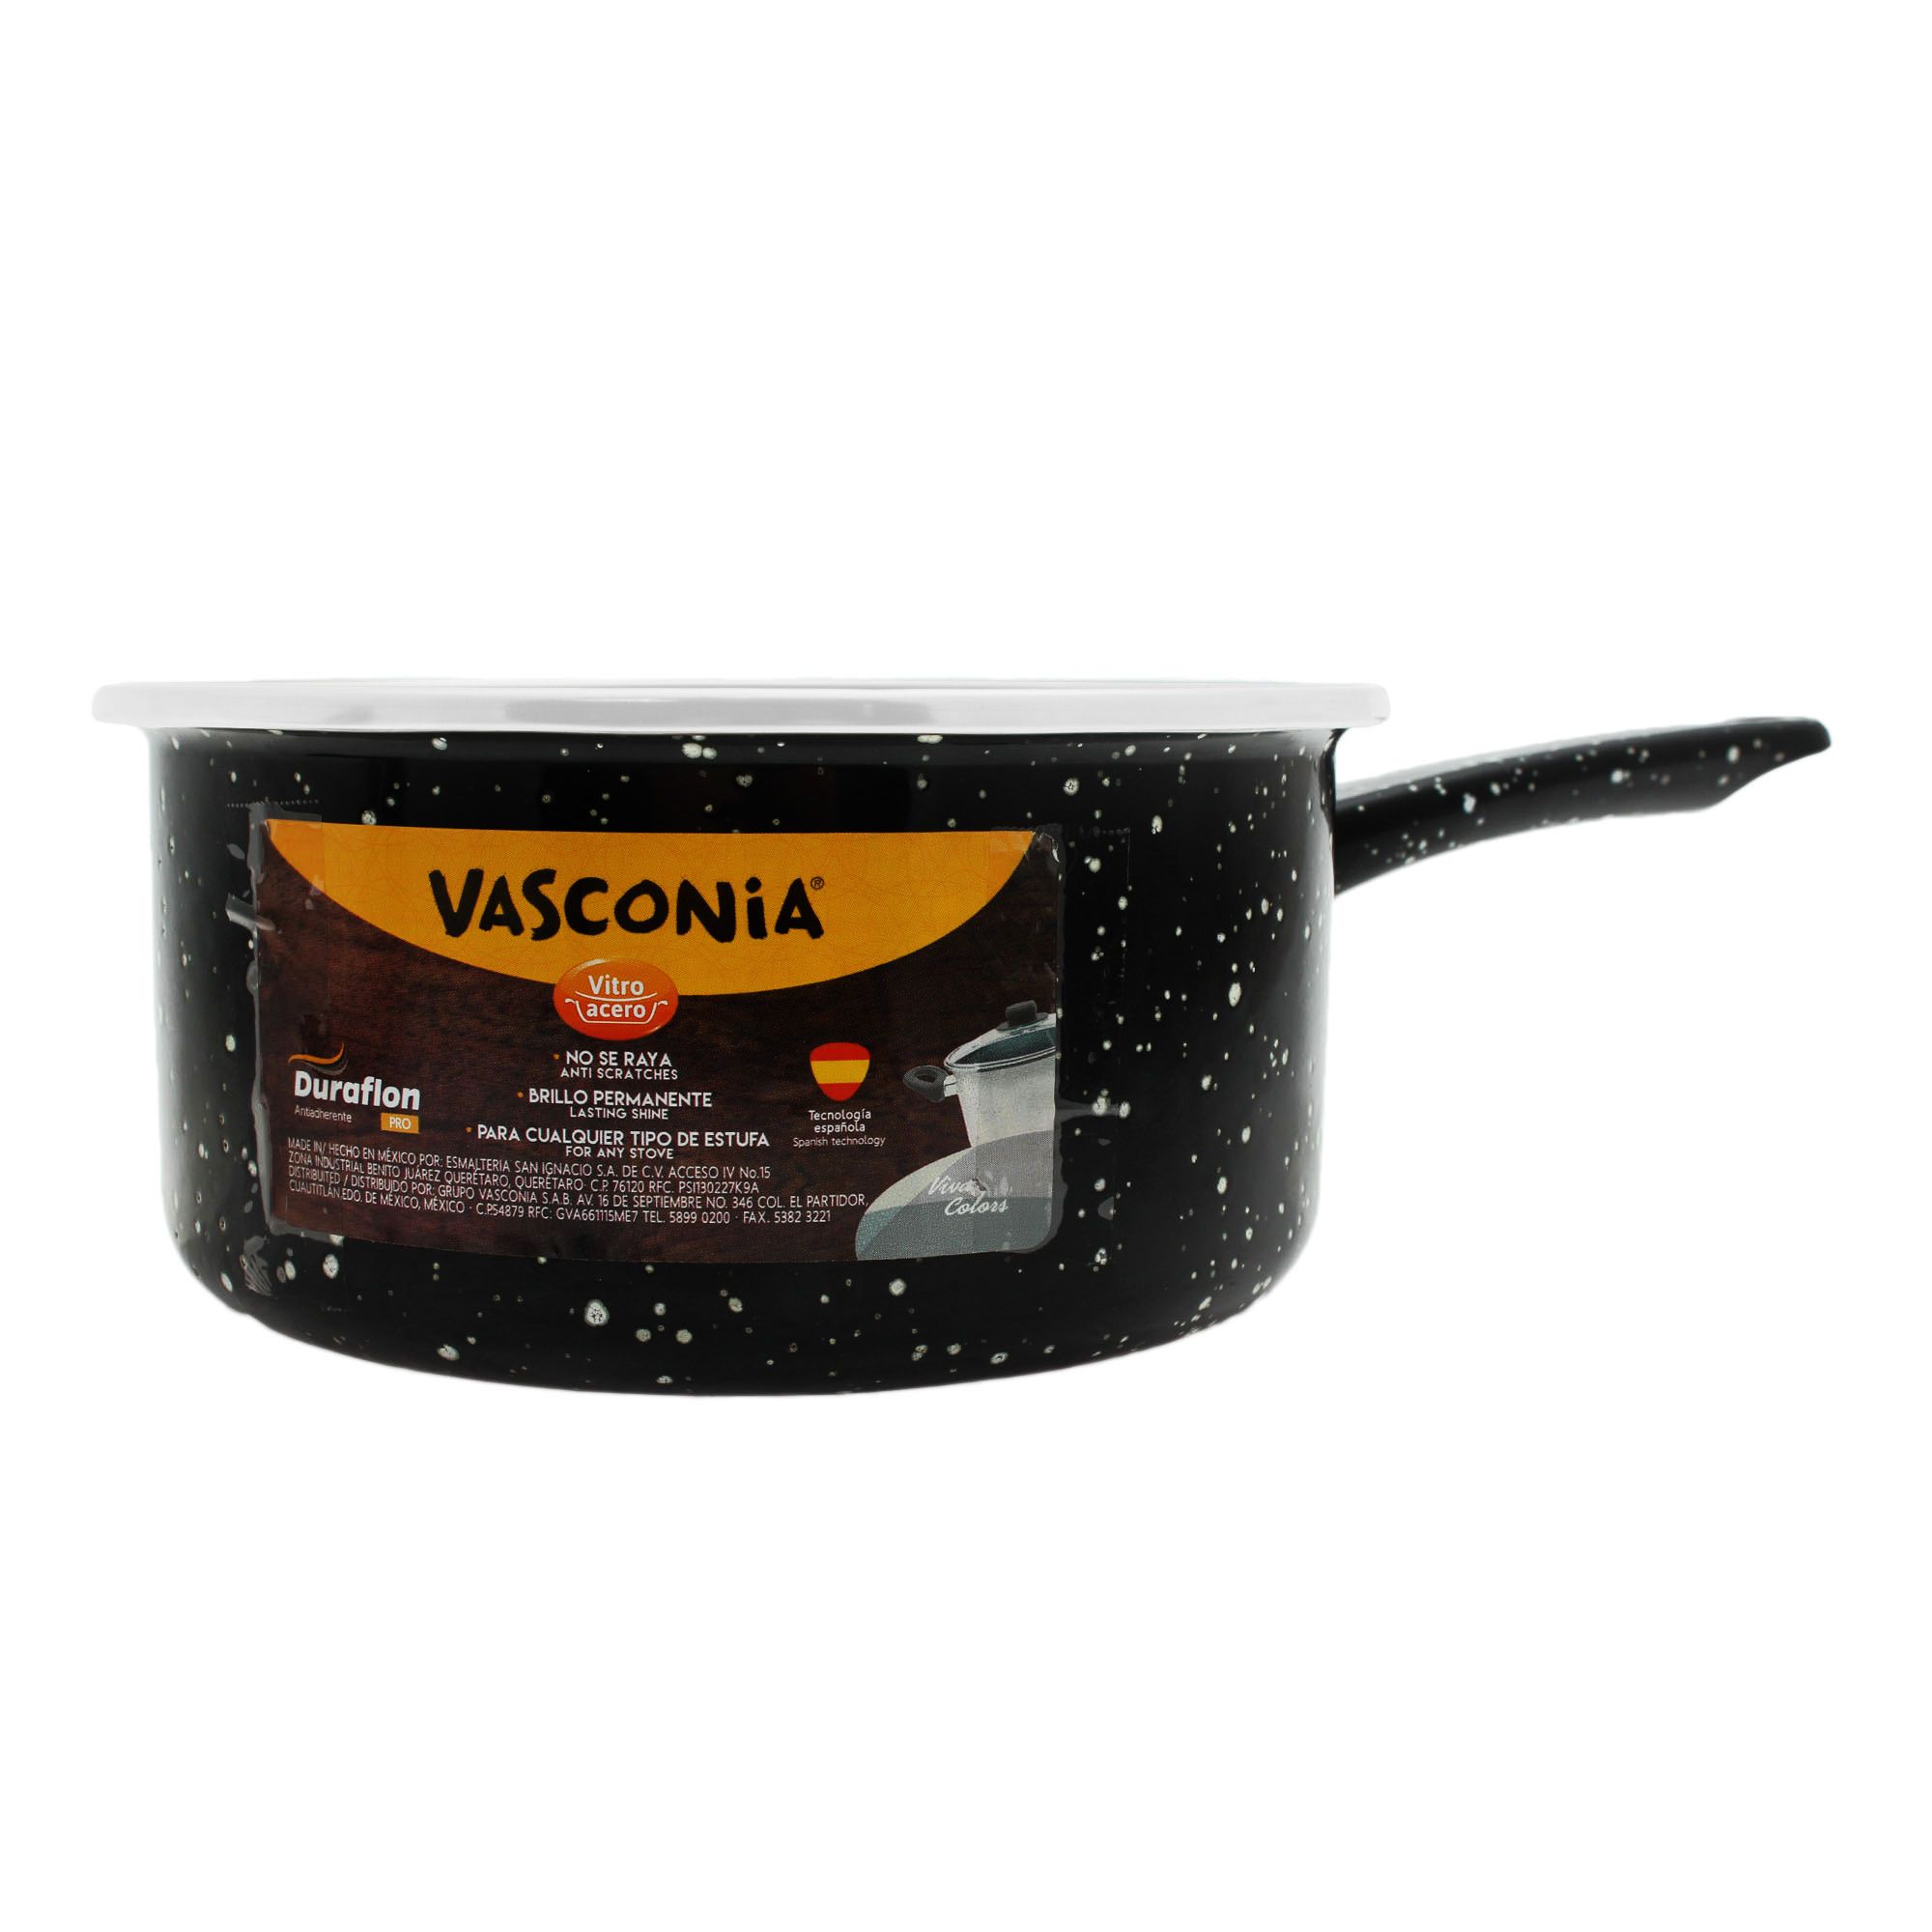 Molde de Acero inoxidable de la marca Vasconia